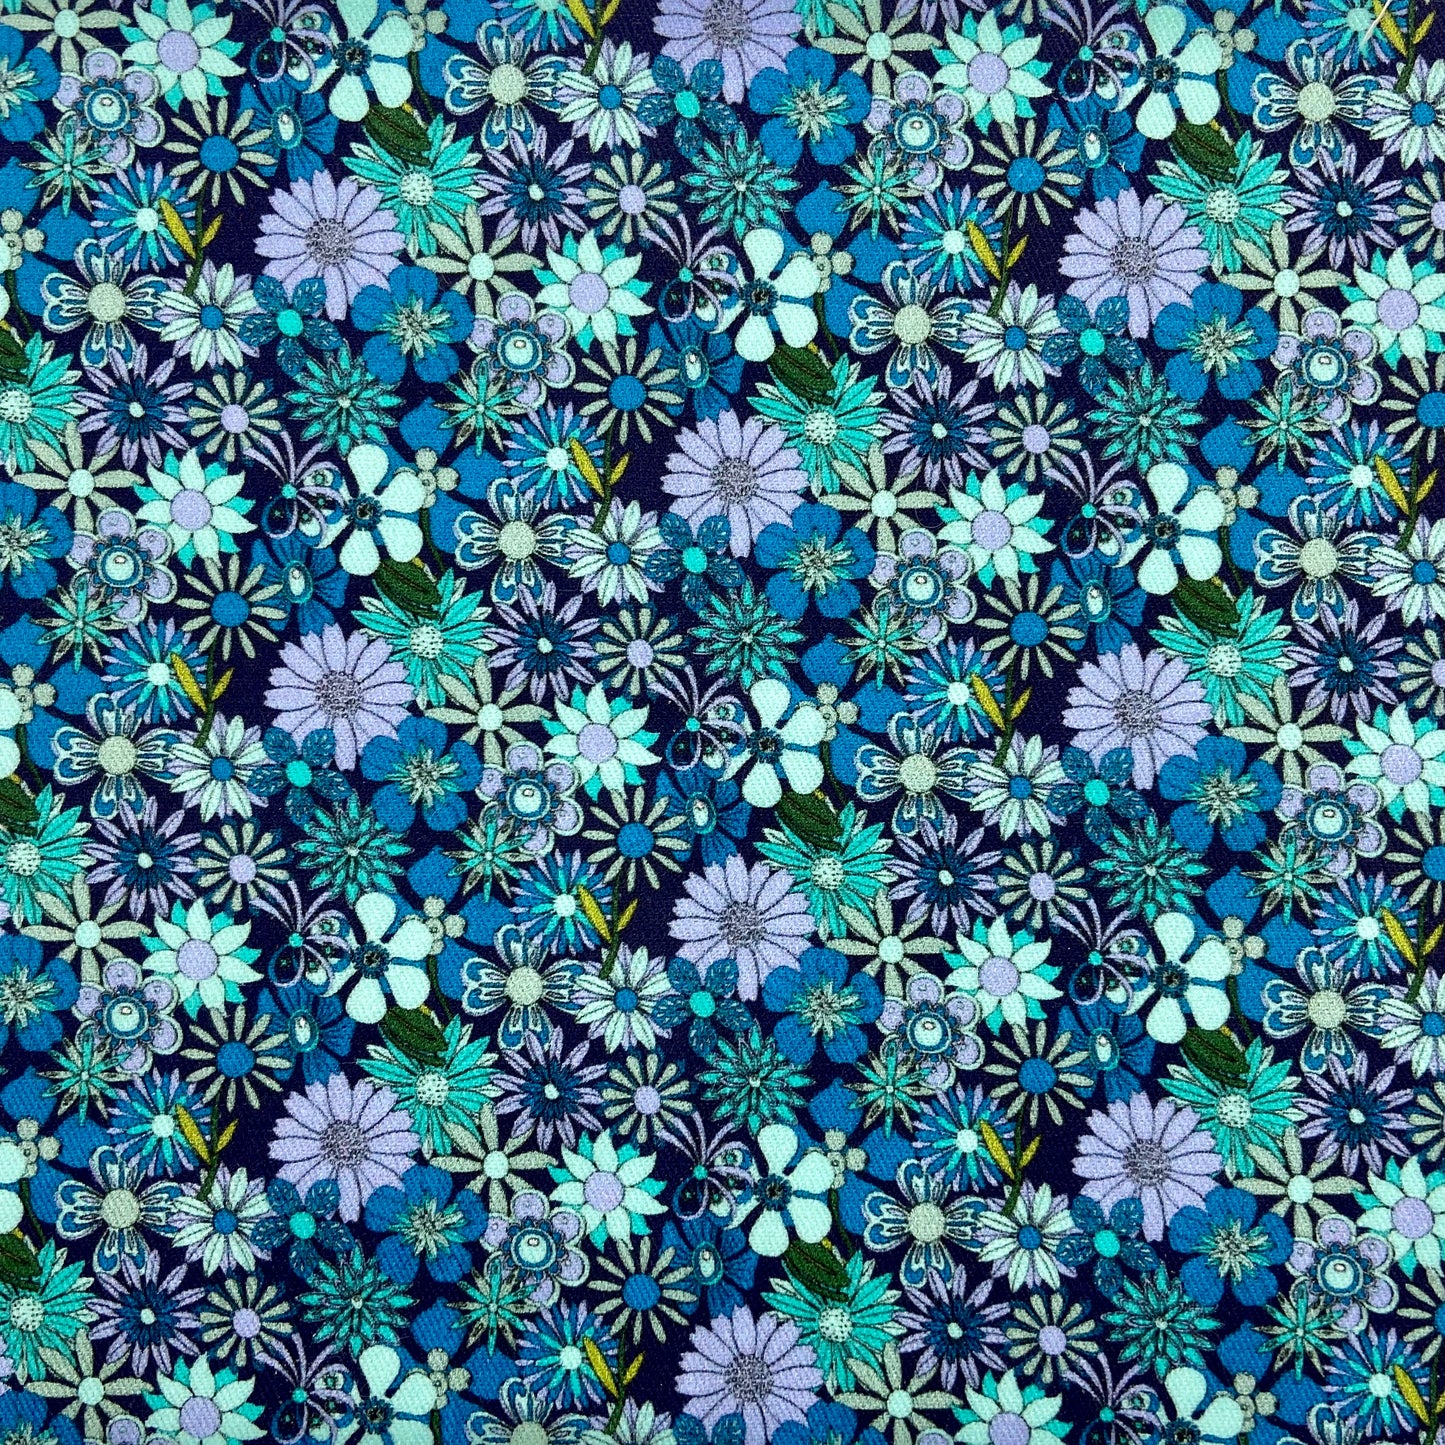 Sergé de coton imprimé motif fleurs camaieu de bleus bleu paon mauve turquoise fleurs asters marguerites fond marin années 70 vintage rétro coloré vif 